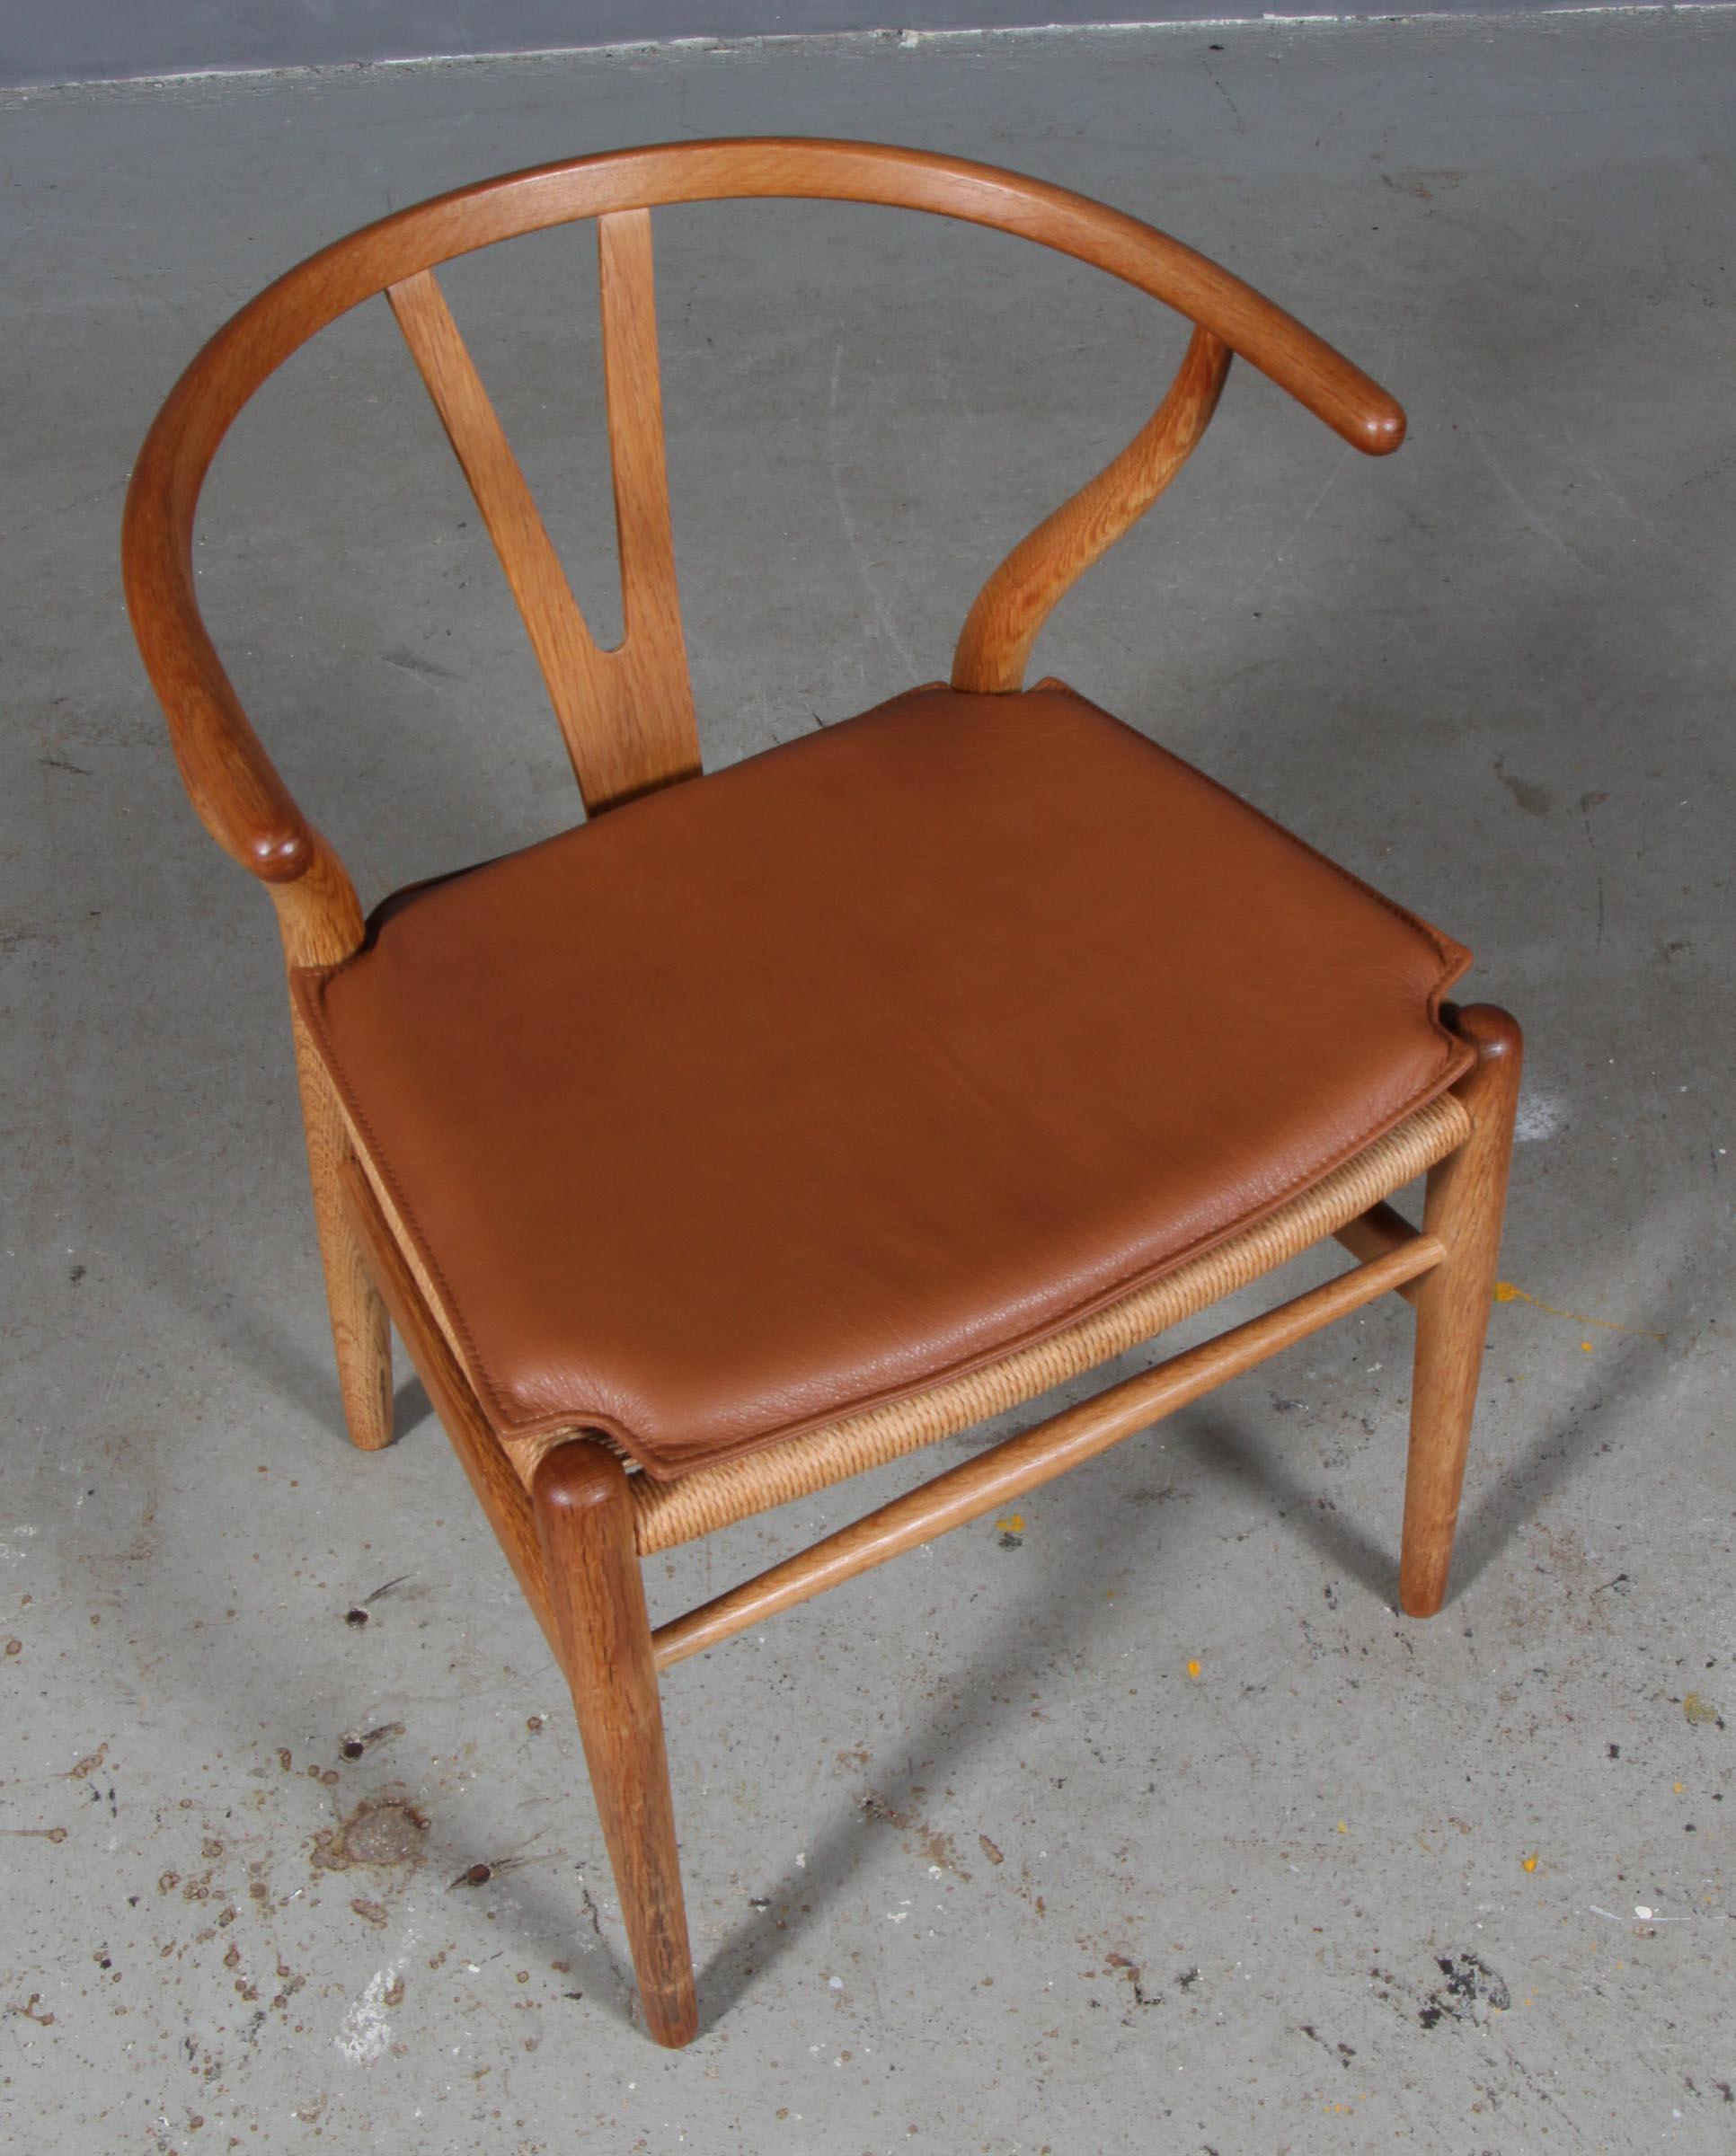 Hans J. Wegner Kissen für Querlenkerstuhl Modell CH24.

Hergestellt aus cognacfarbenem reinem Anilinleder und hochwertigem Schaumstoff.

Nur das Kissen, nicht der Stuhl.